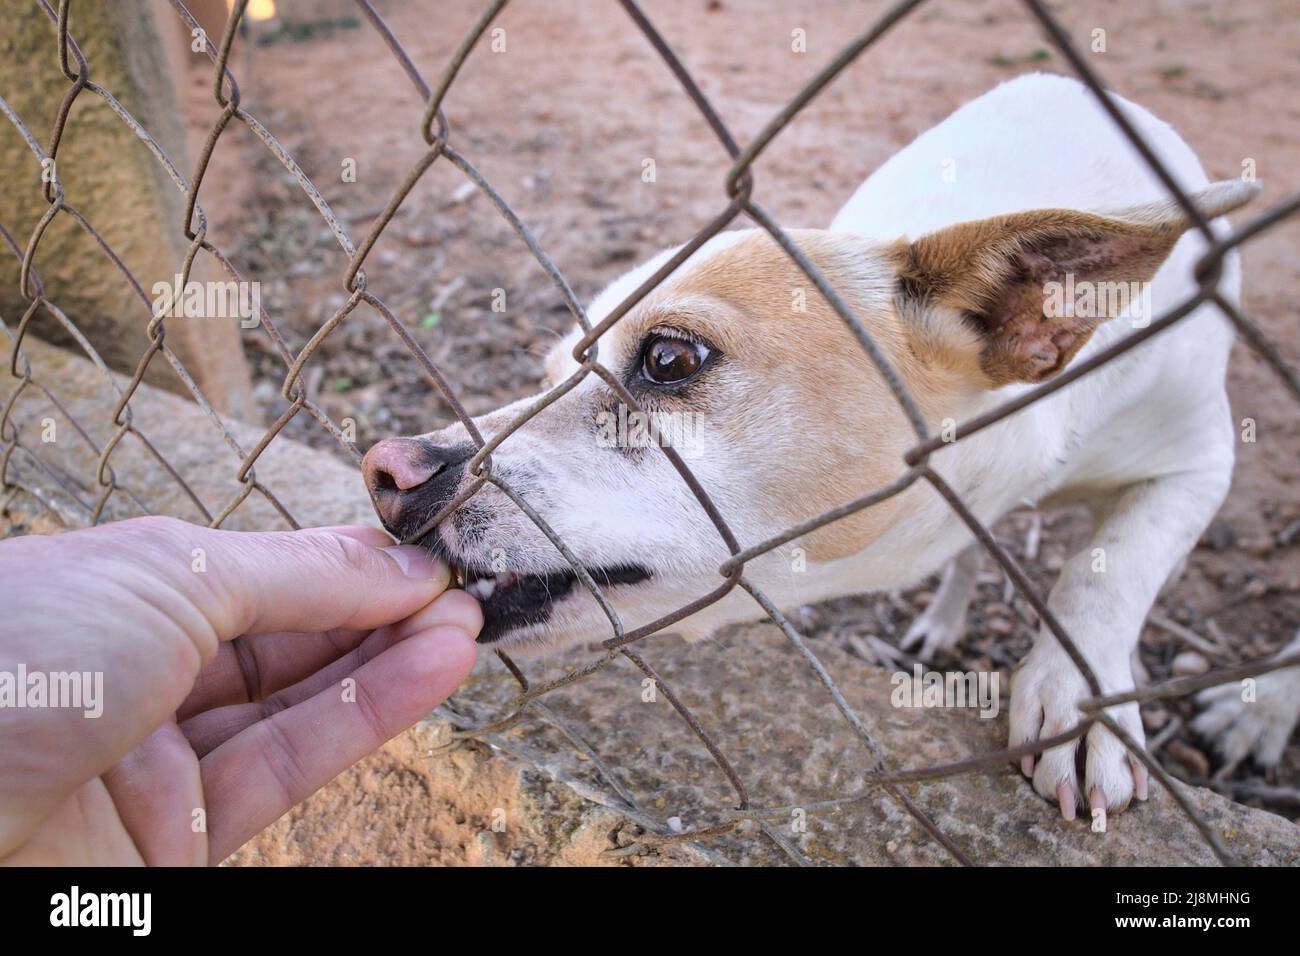 Joli chien abandonné derrière les barreaux. Un animal affamé demande de la nourriture. Banque D'Images